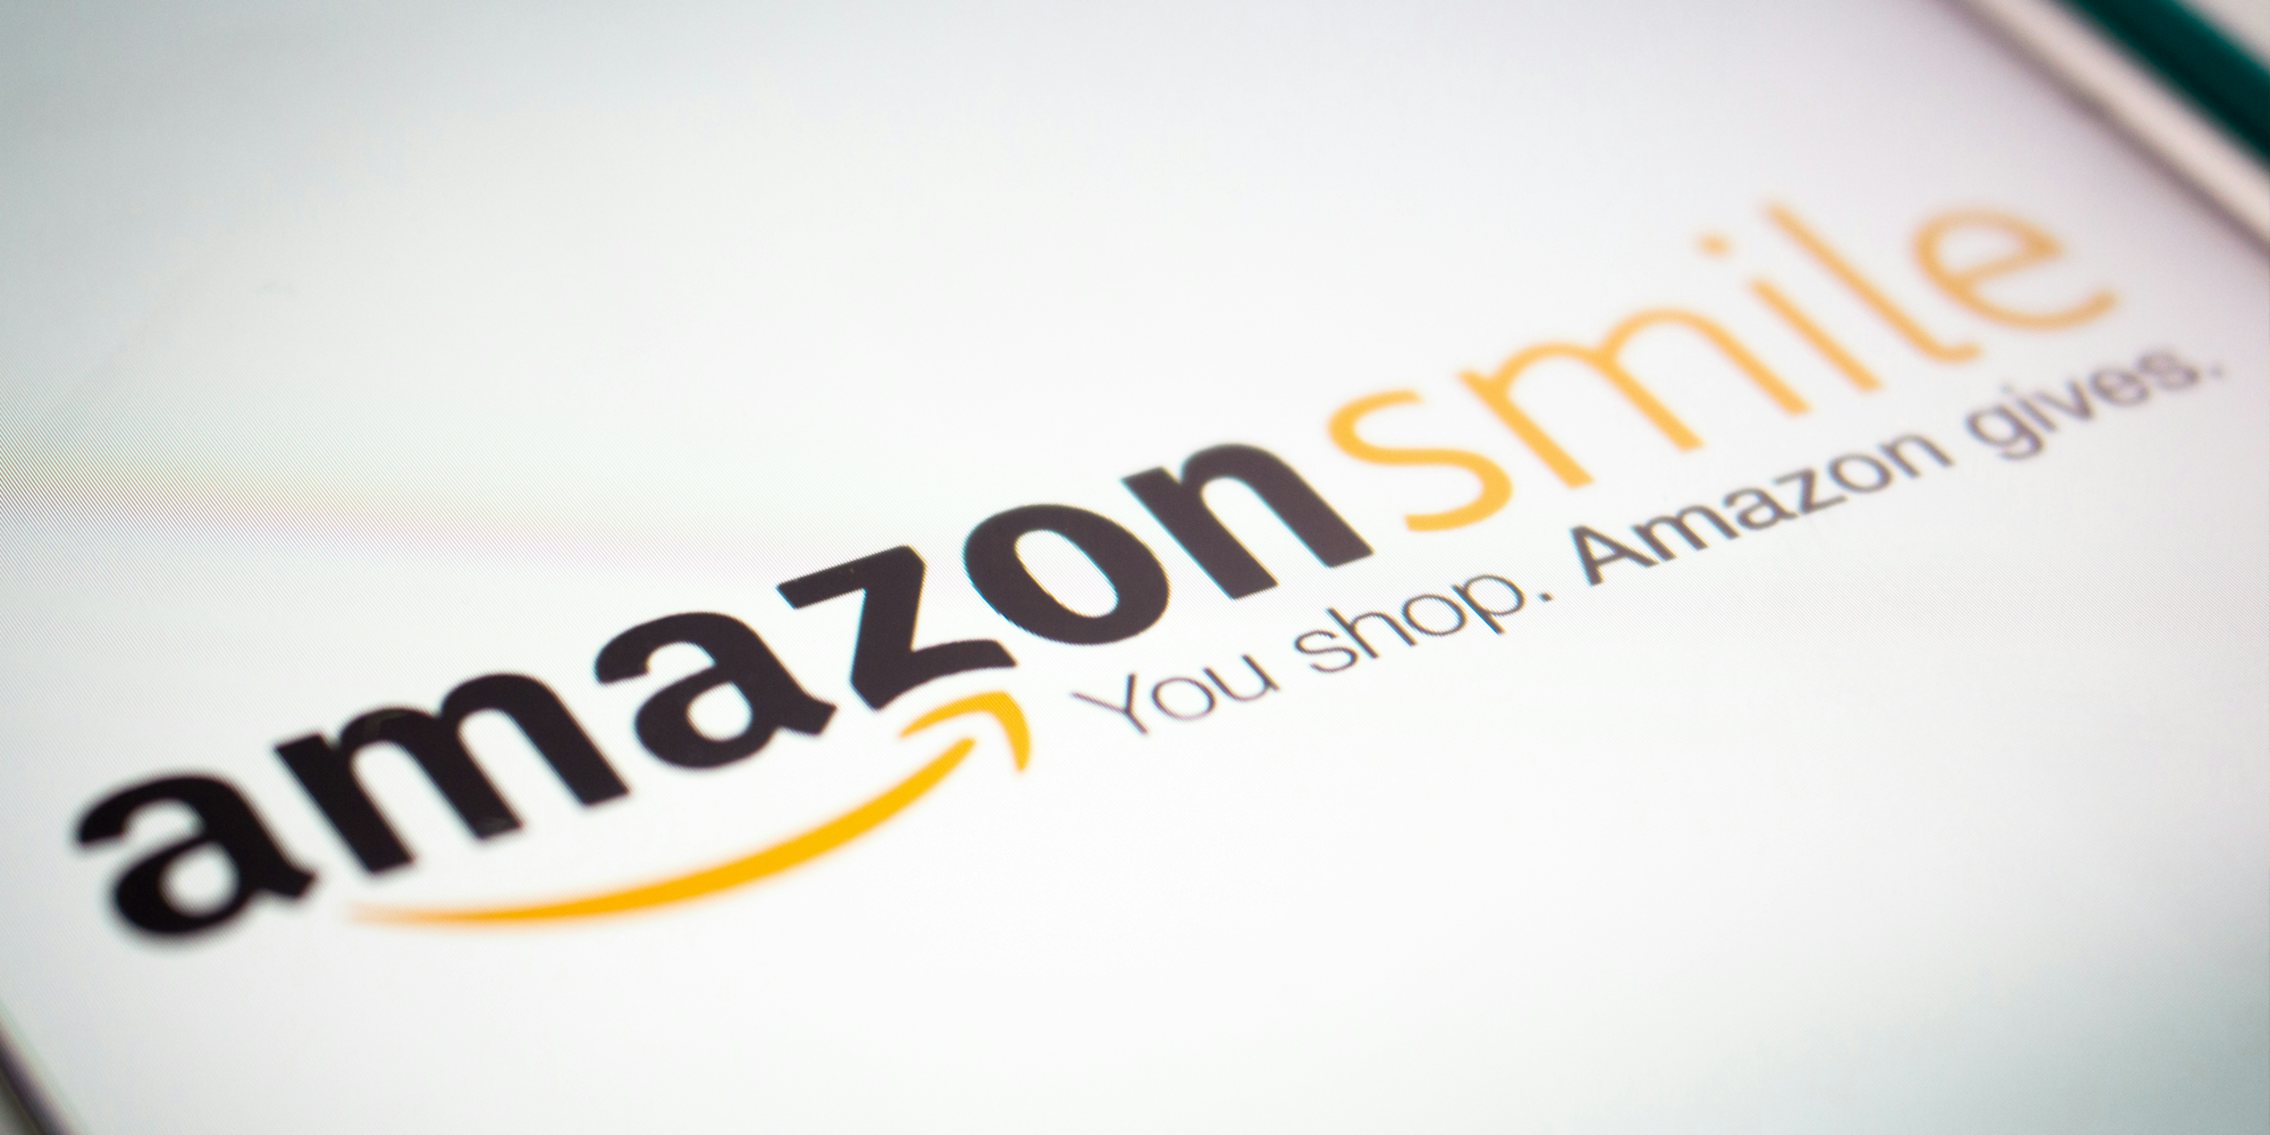 Amazon Smile logo on screen